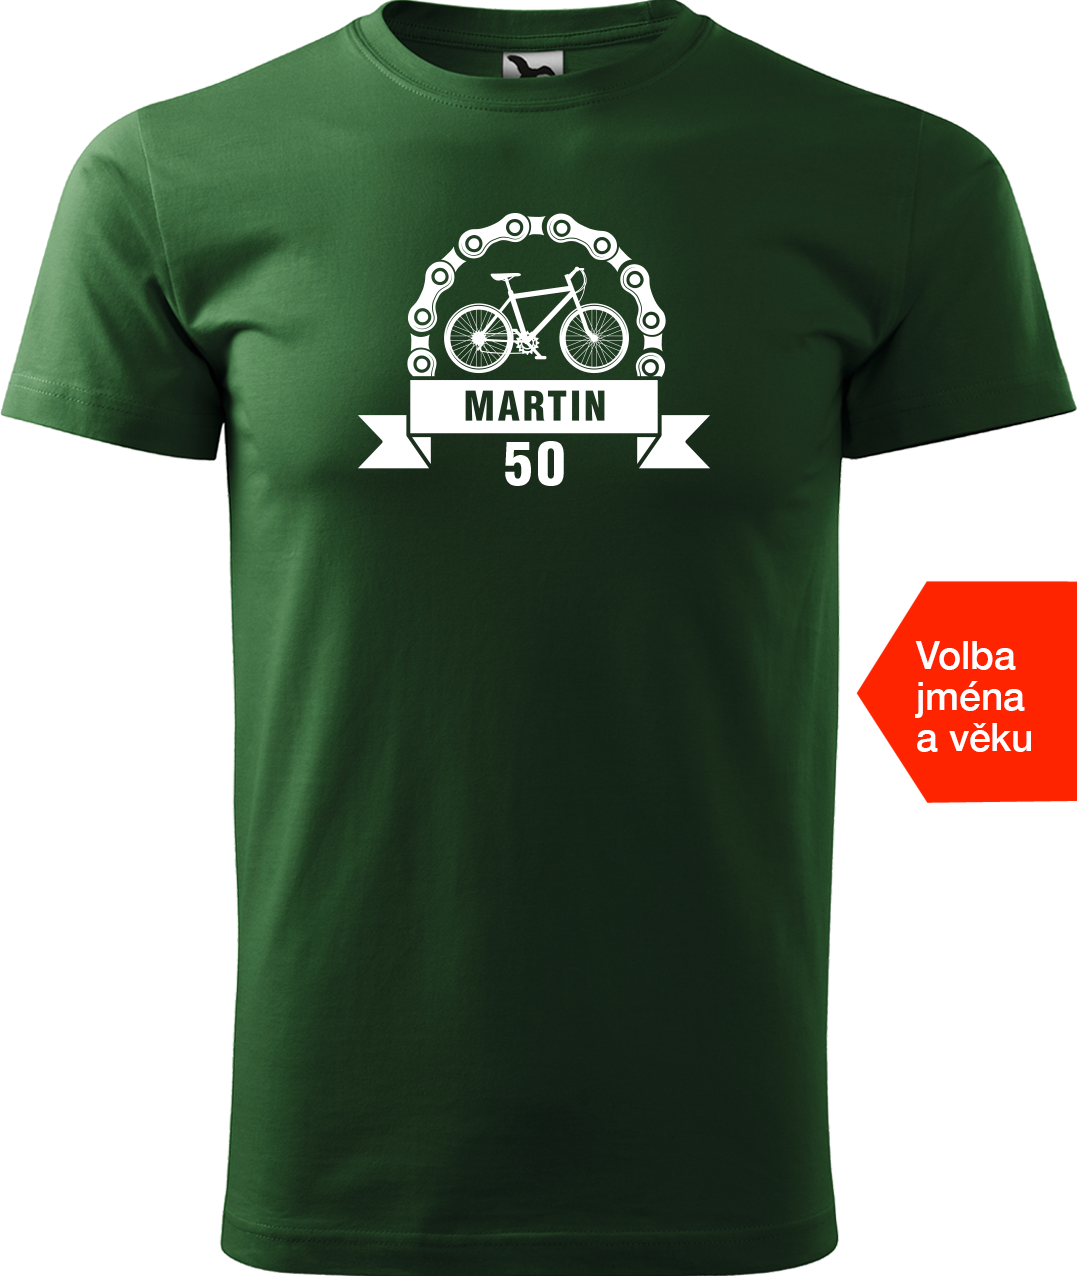 Pánské tričko pro cyklistu se jménem a věkem - Blahopřání Velikost: S, Barva: Lahvově zelená (06)